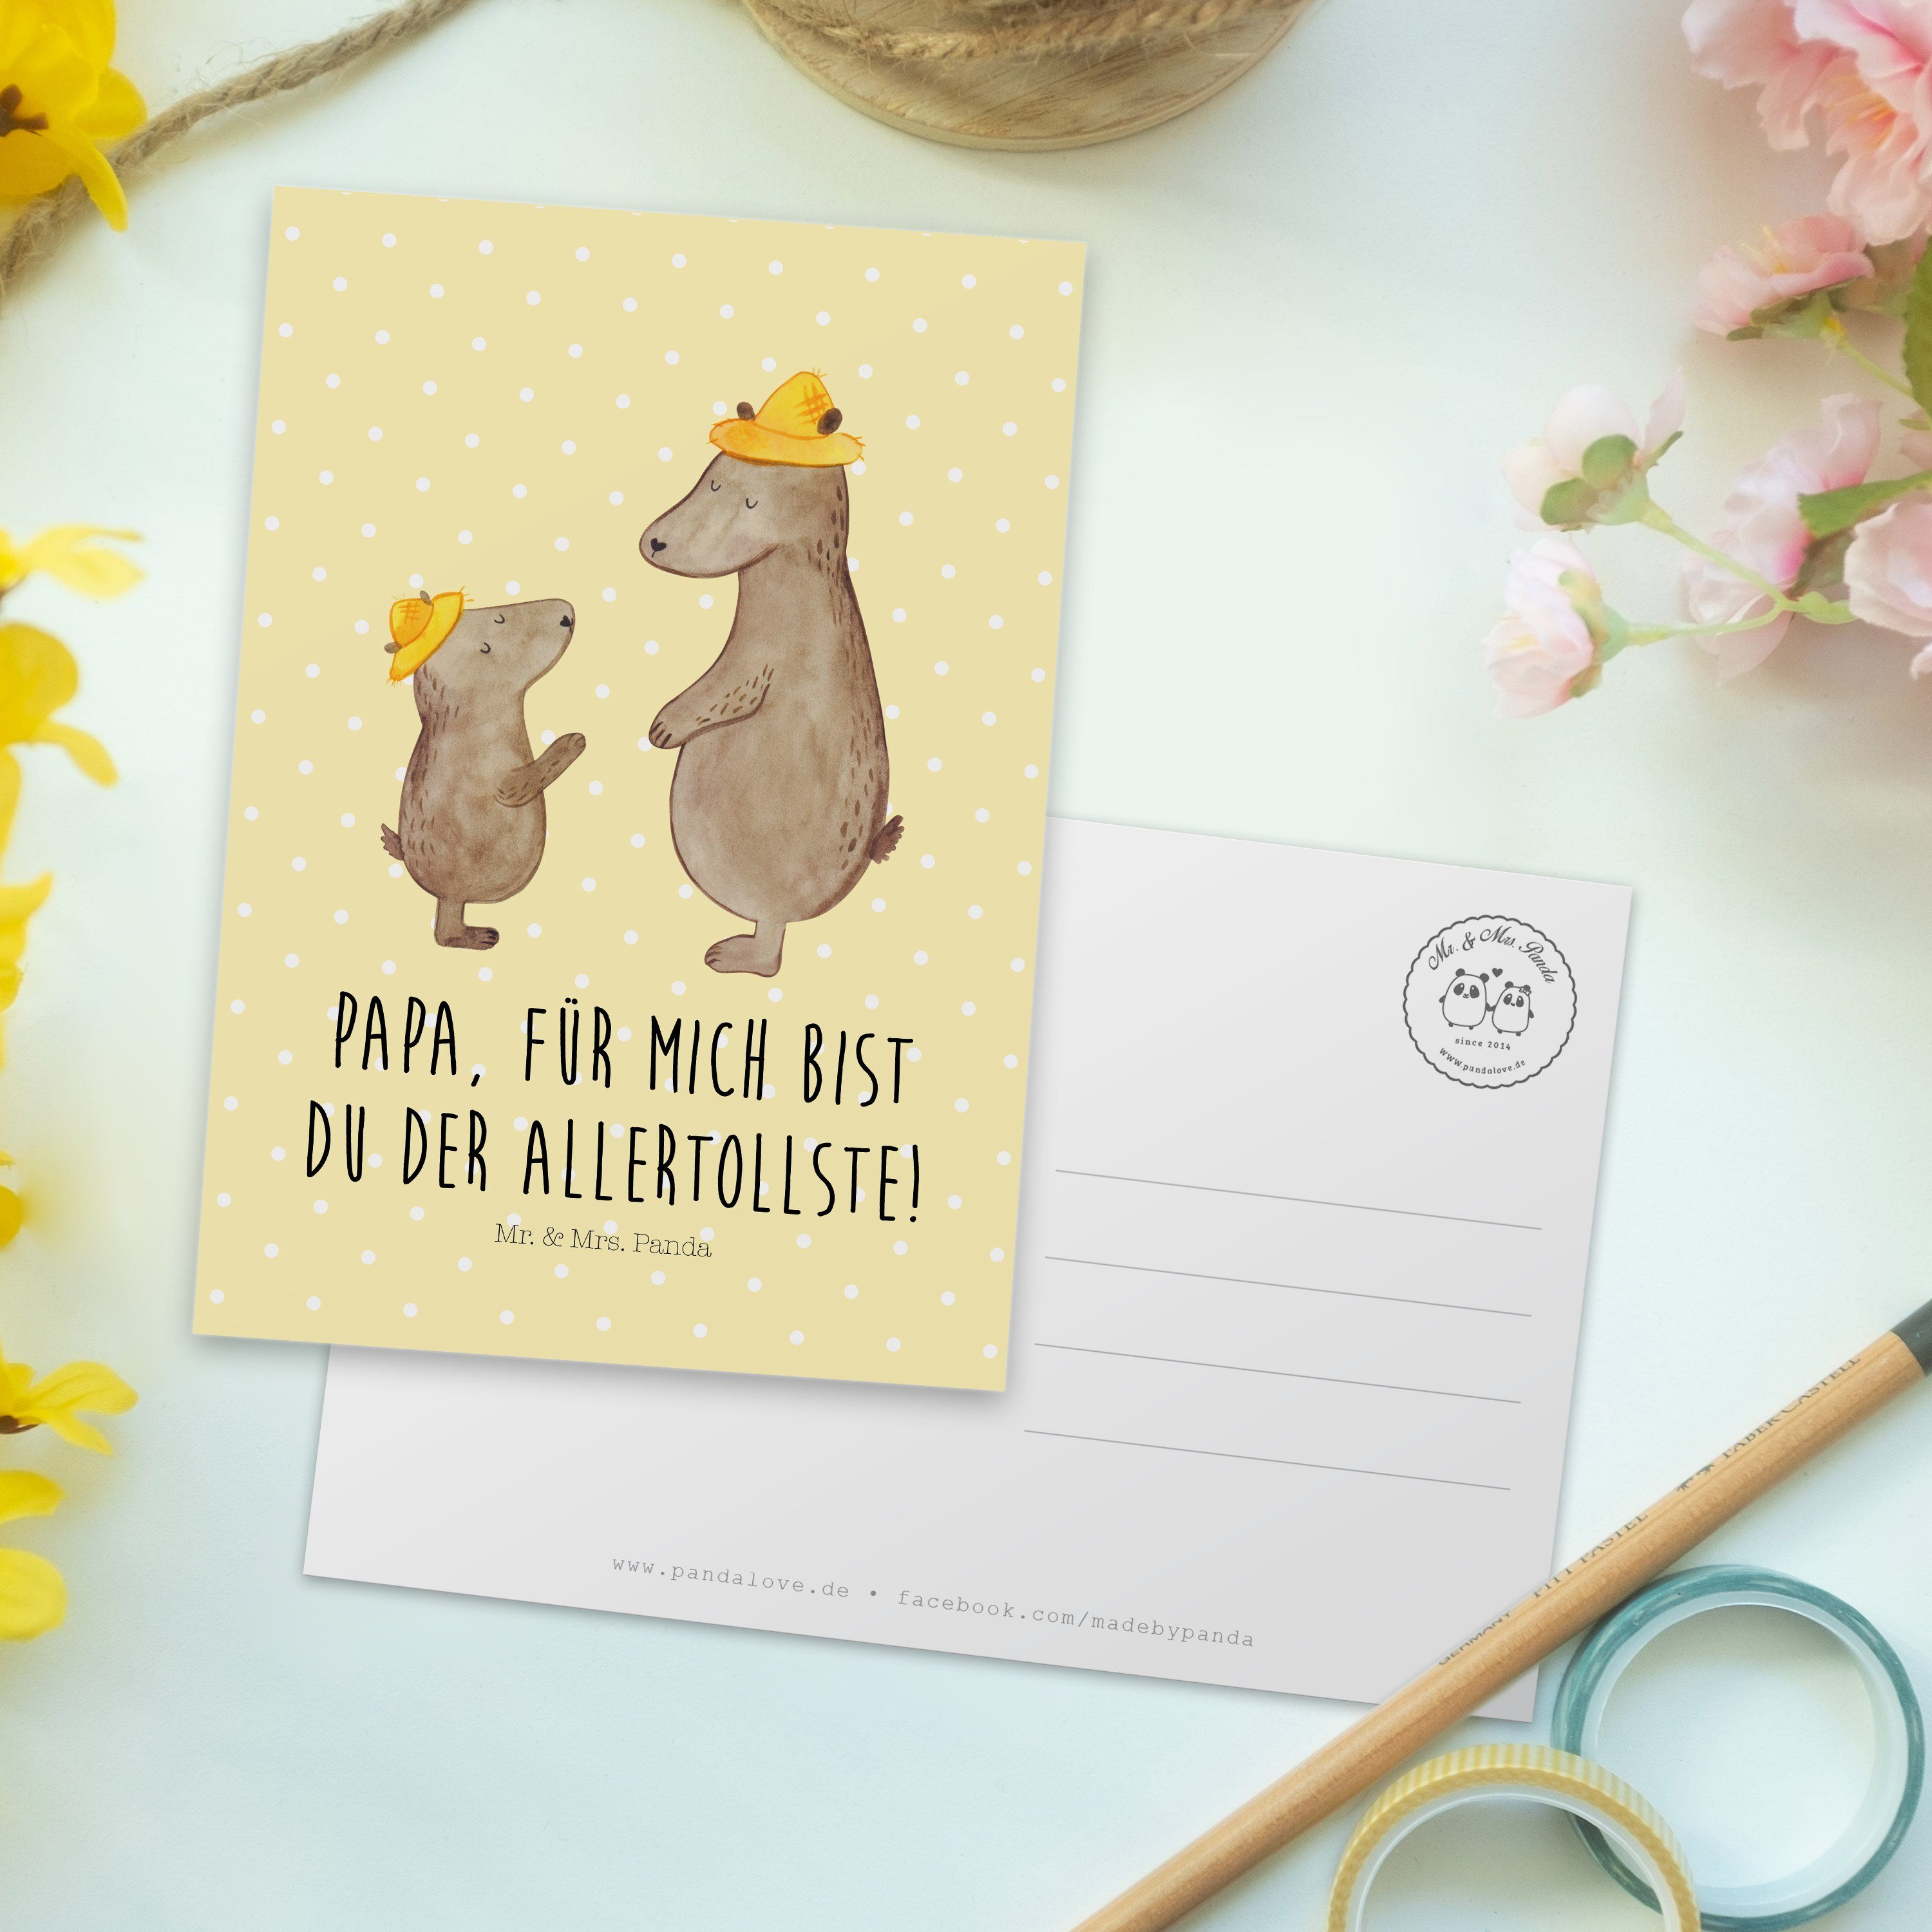 Hut - mit & Geburtstagskar Mrs. Bären Panda Mr. Pastell Postkarte - Gelb Geschenk, Karte, Vater,